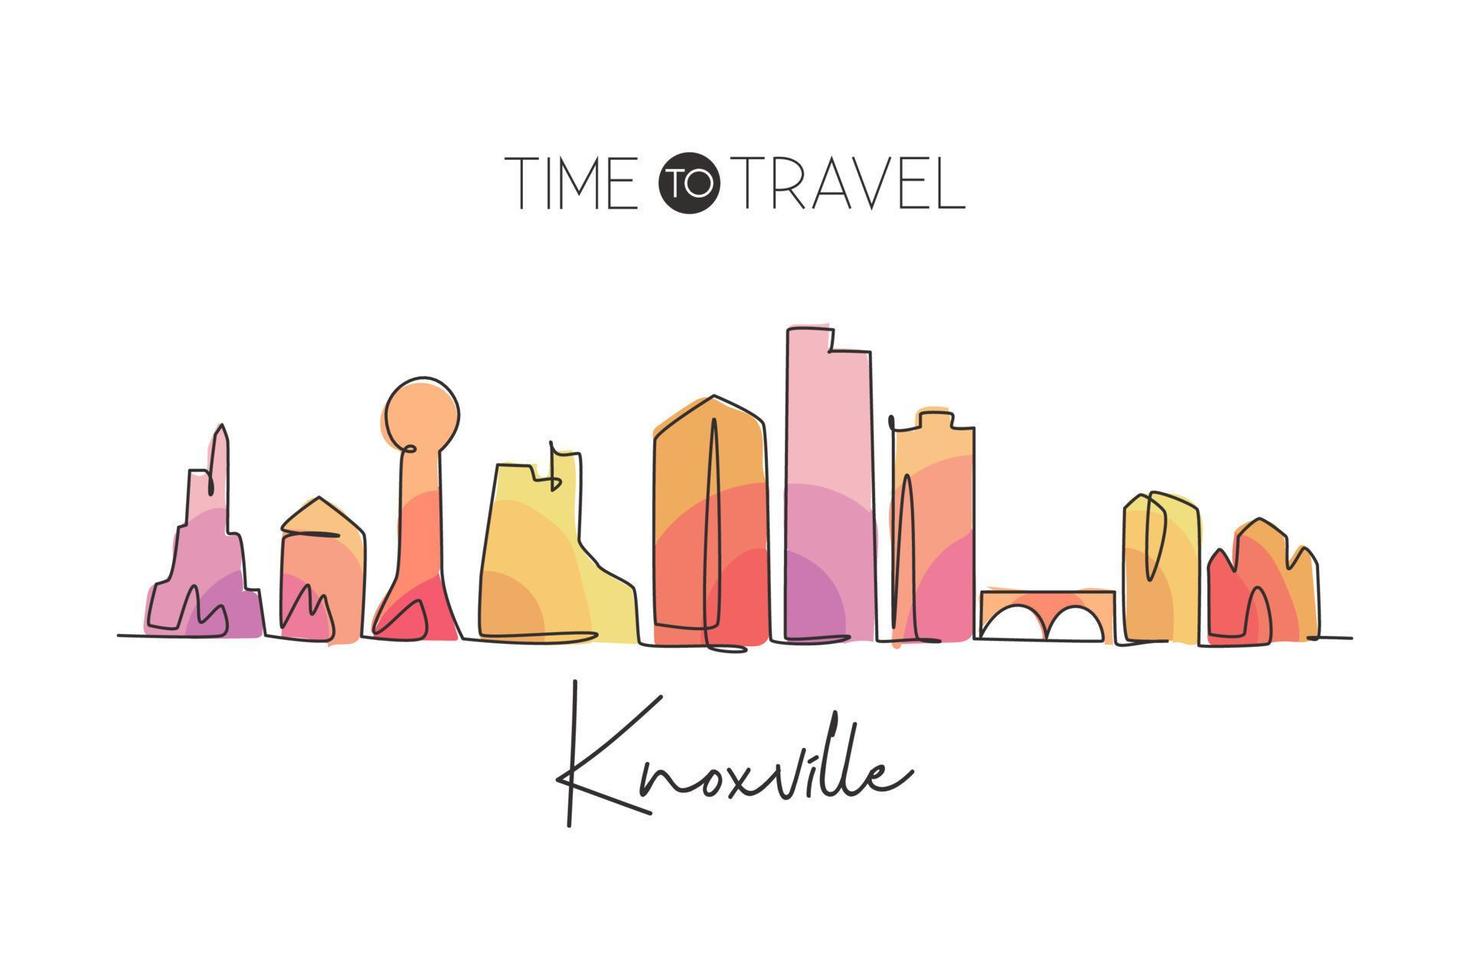 Eine durchgehende Strichzeichnung der Skyline von Knoxville, Tennessee. schönes Wahrzeichen. Weltlandschaftstourismus Reisehauptwanddekor-Plakatdruck. stilvolle einzeilig zeichnende Design-Vektorillustration vektor